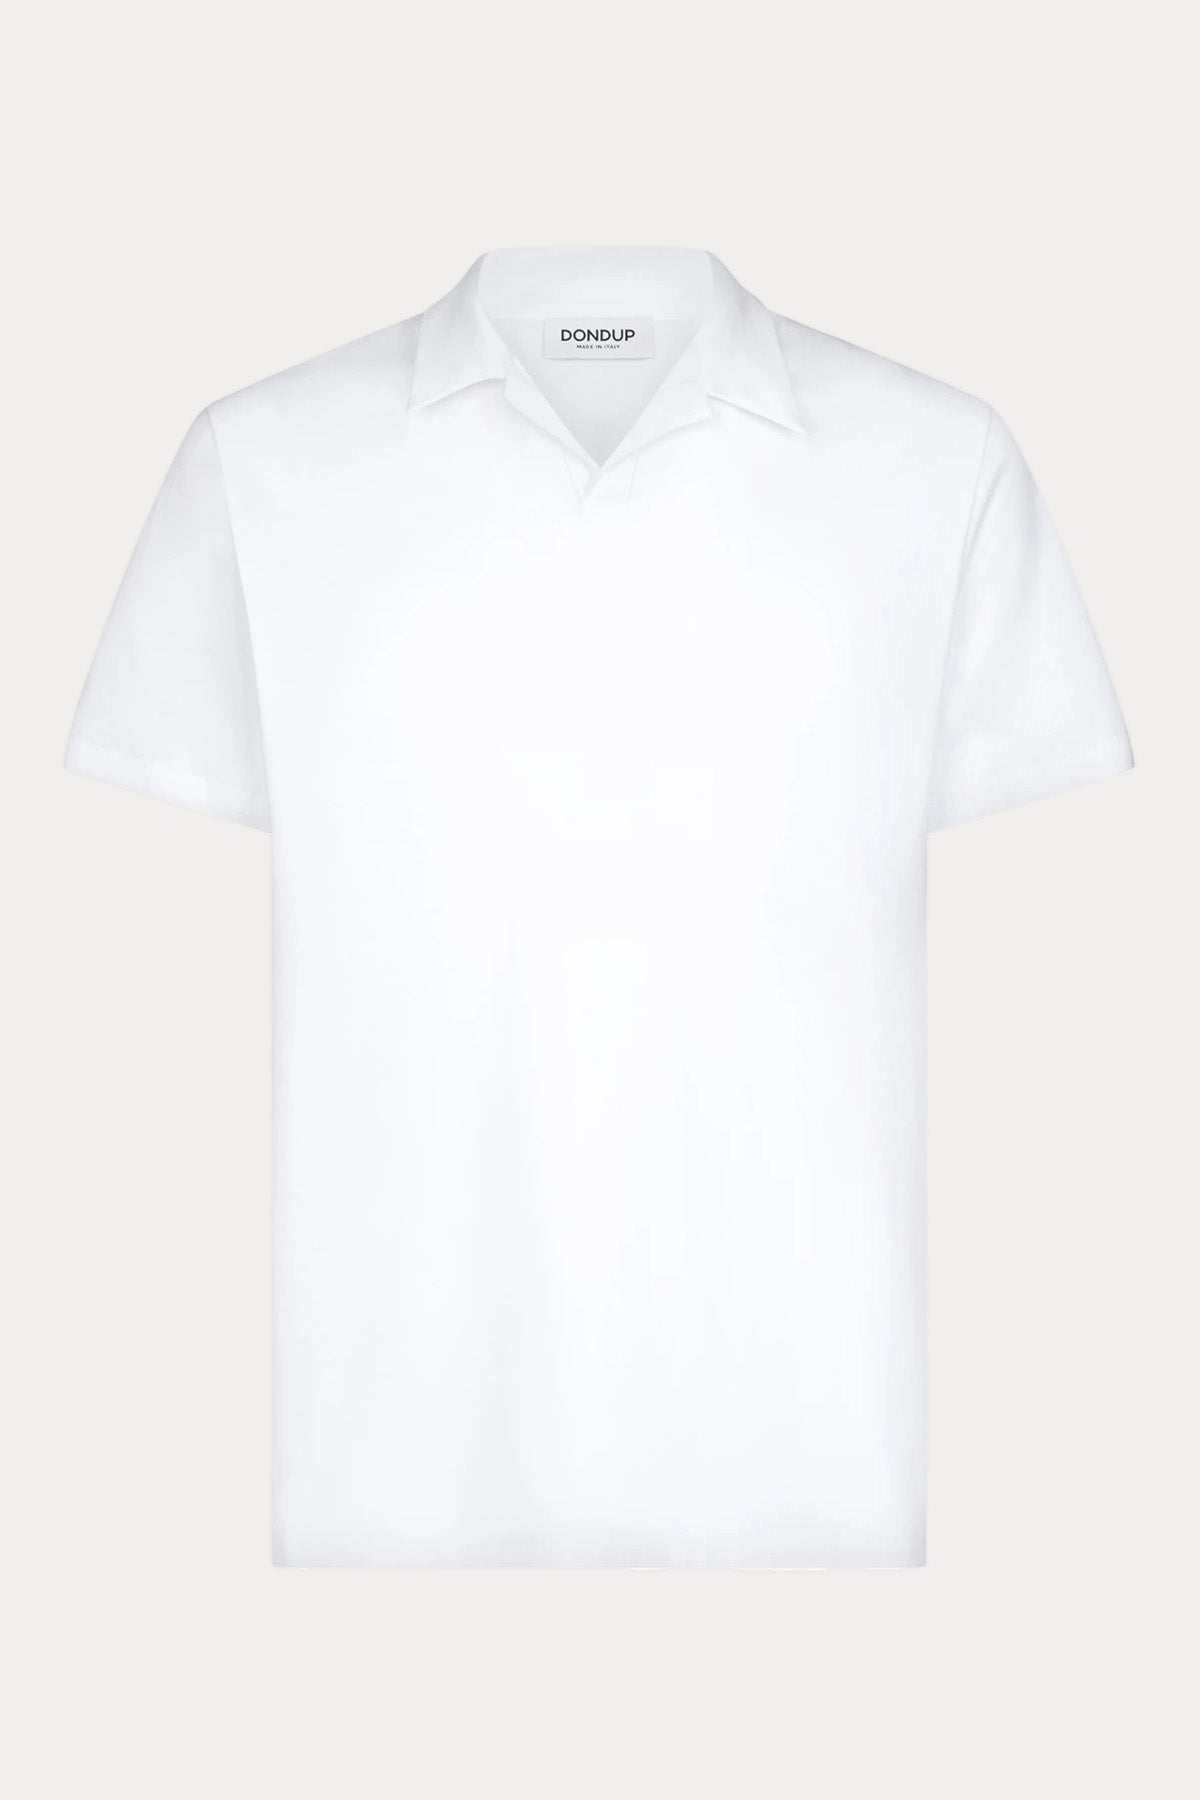 Dondup Logolu Polo Yaka T-shirt